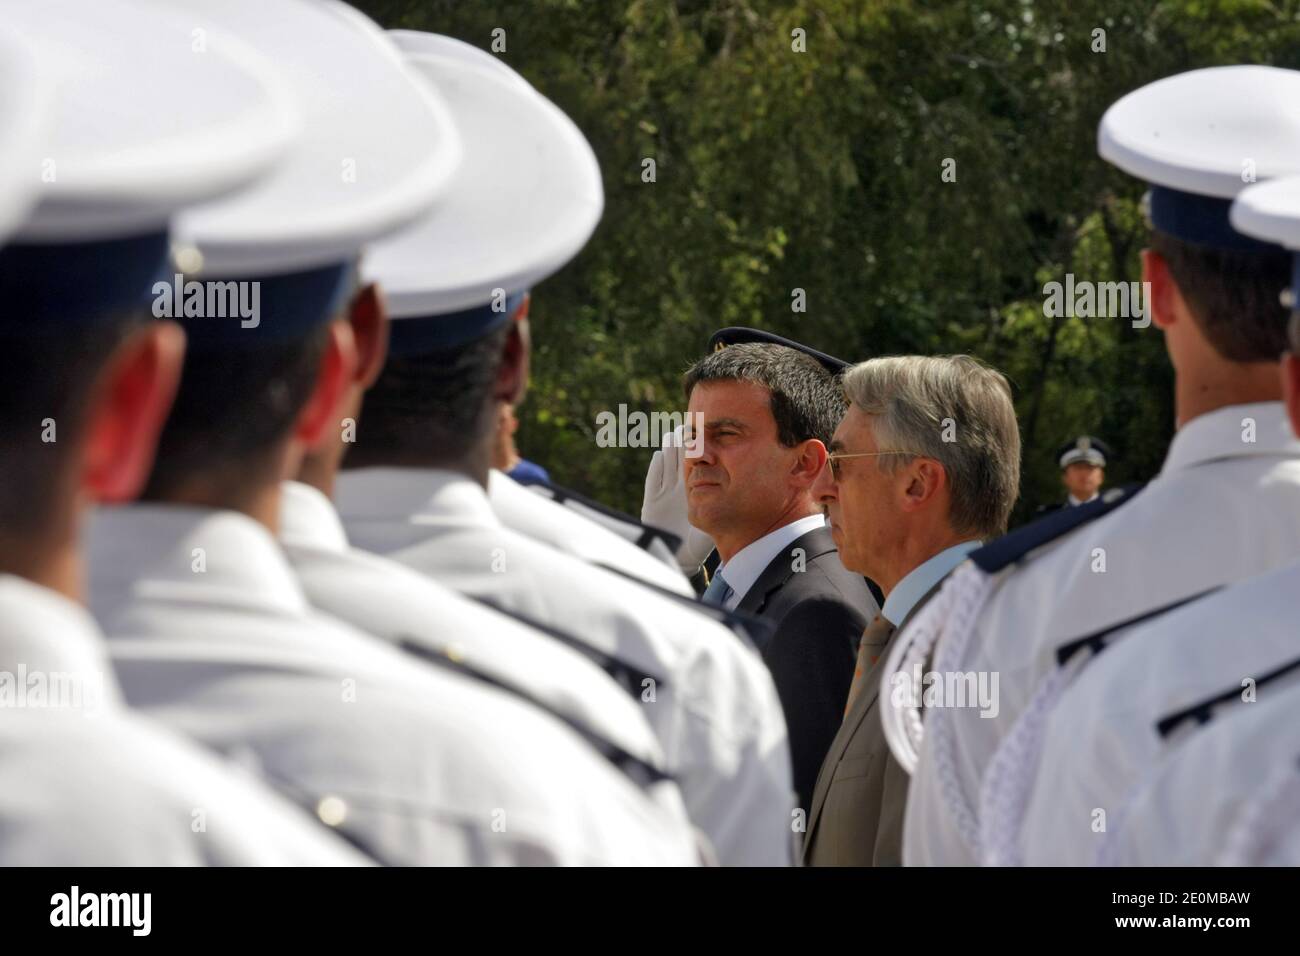 El ministro francés del Interior, Manuel Valls, visita una escuela policial en Nimes, sur de Francia, el 17 de septiembre de 2012. Foto de Pascal Parrot/ABACAPRESS.COM Foto de stock